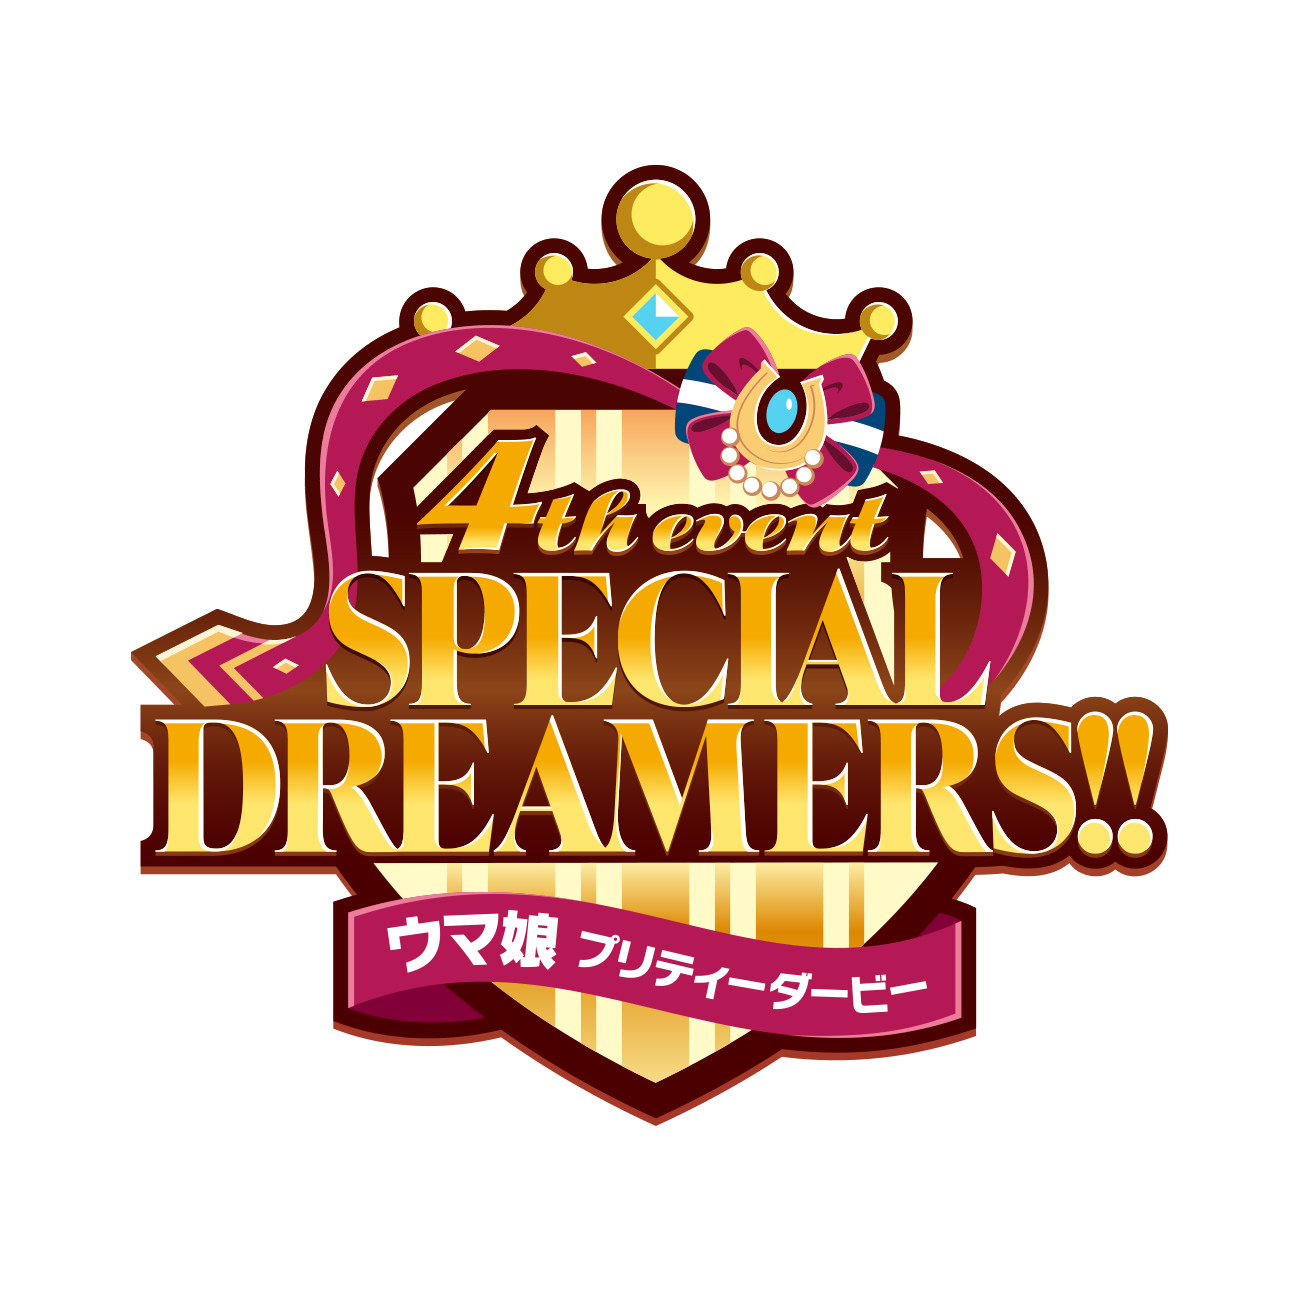 ウマ娘 プリティーダービー 4th EVENT SPECIAL DREAMERS!! & EXTRA 